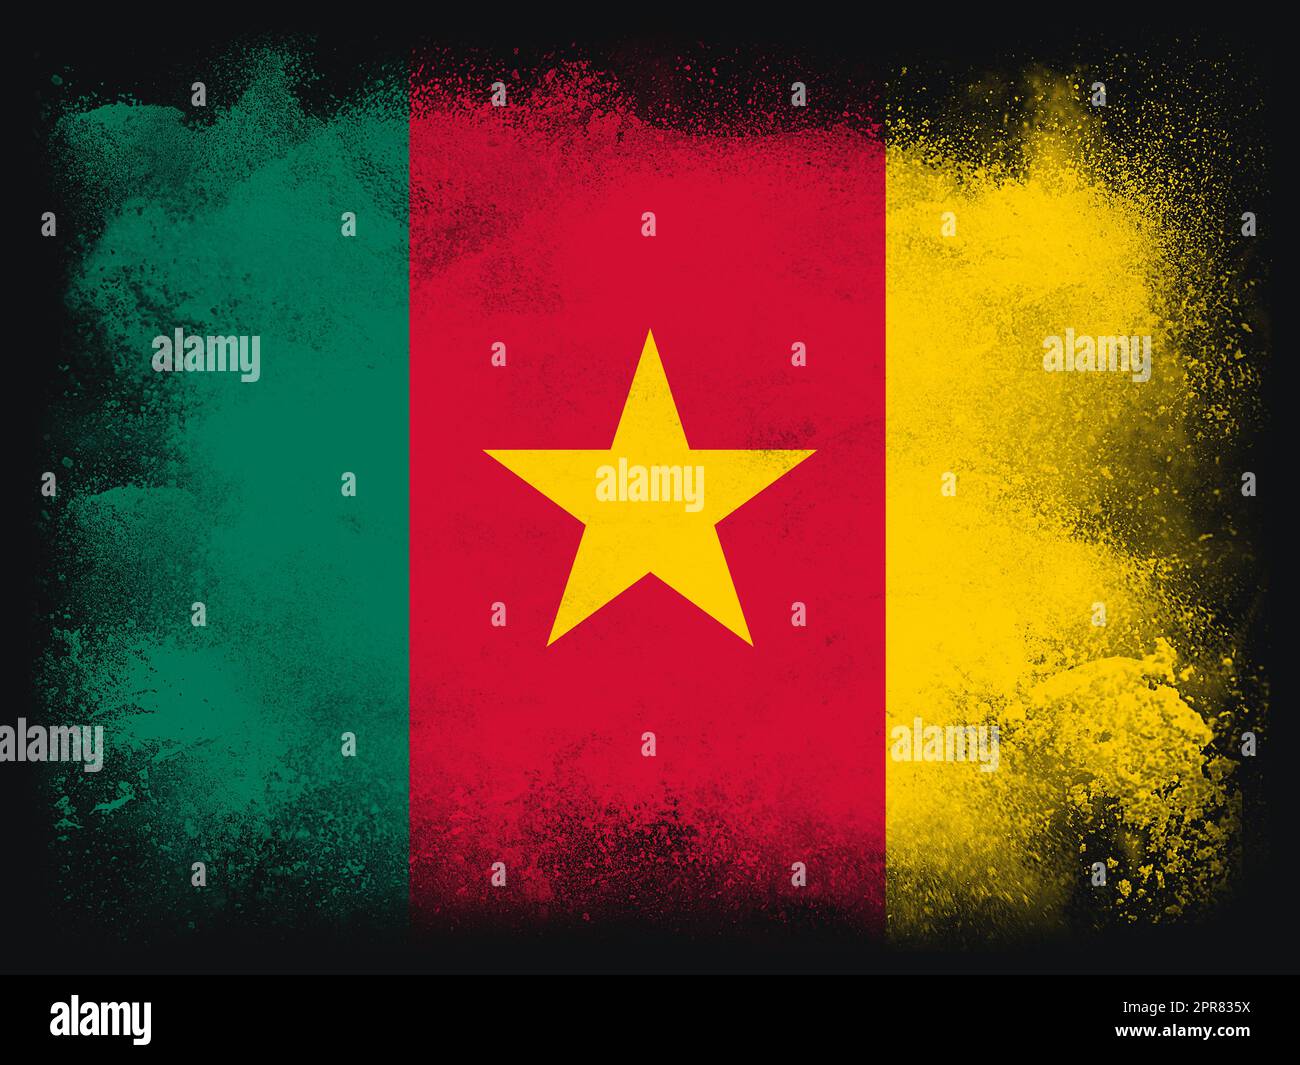 Cameroun drapeau composition de conception de poudre et de peinture explosant, isolée sur un fond noir pour l'espace de copie. Explosion de particules de poussière abstraites colorées. Symbole de football de la coupe du monde 2022 pour impression Banque D'Images